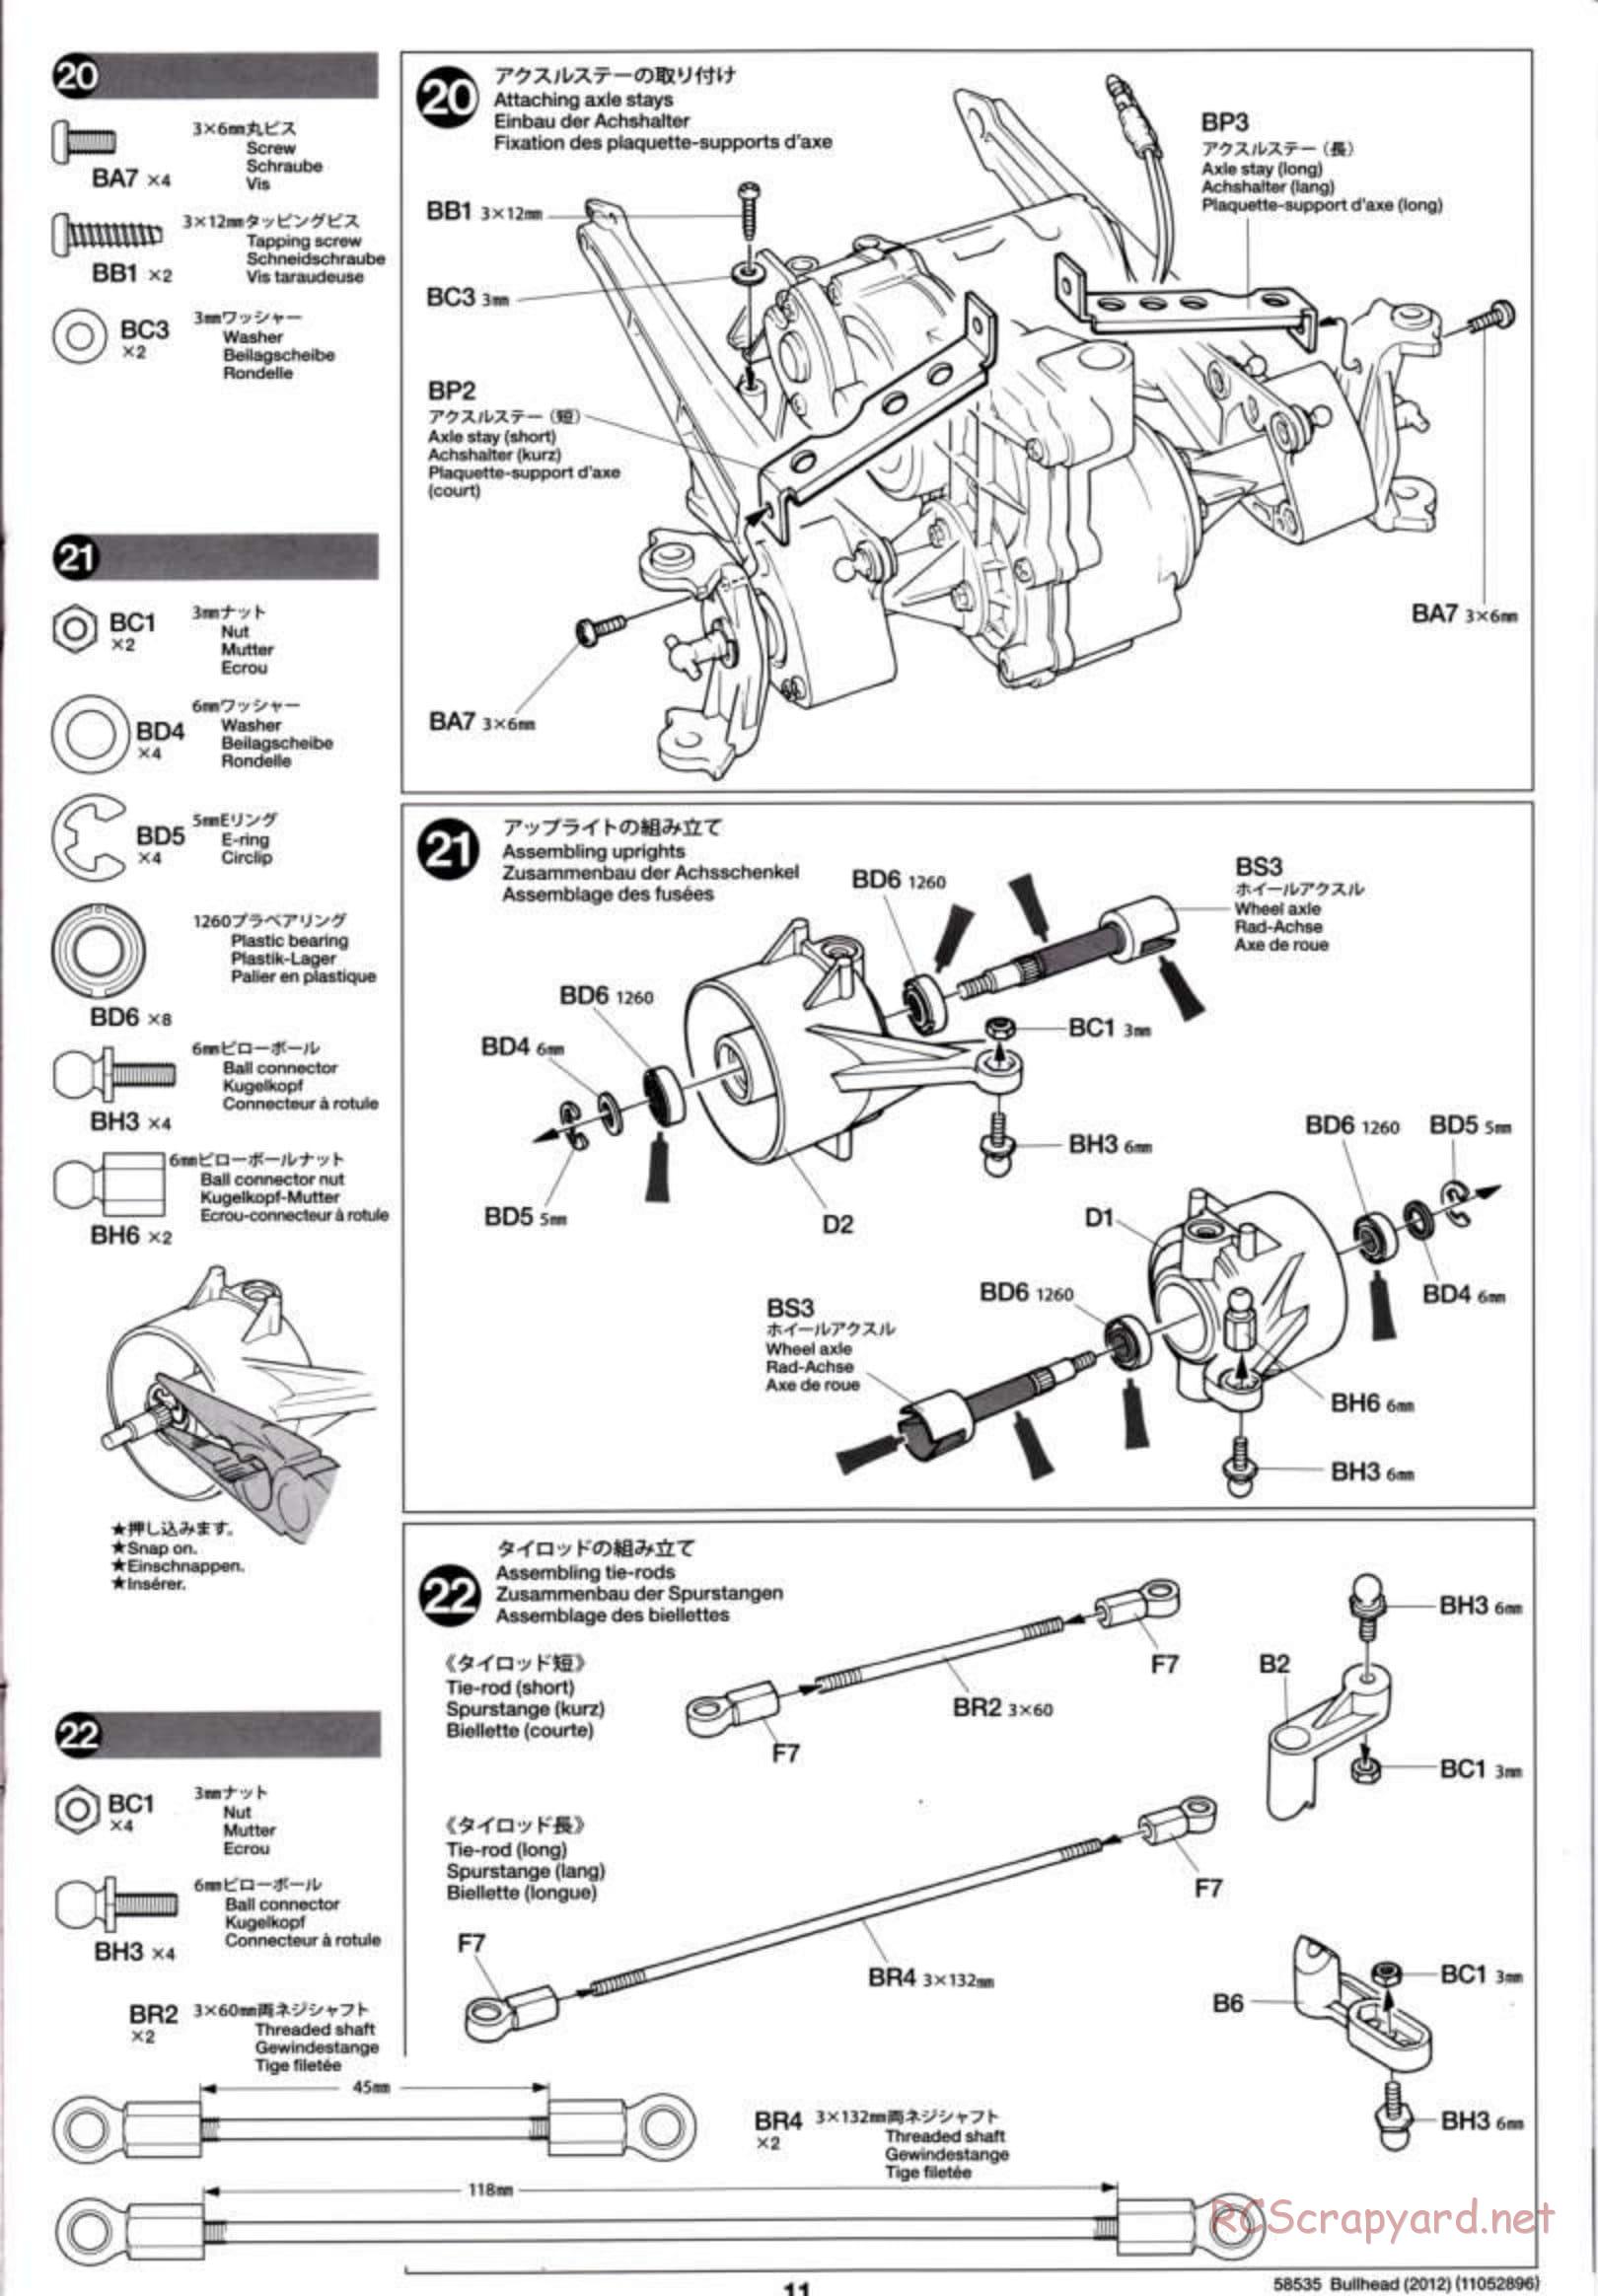 Tamiya - Bullhead 2012 - CB Chassis - Manual - Page 11